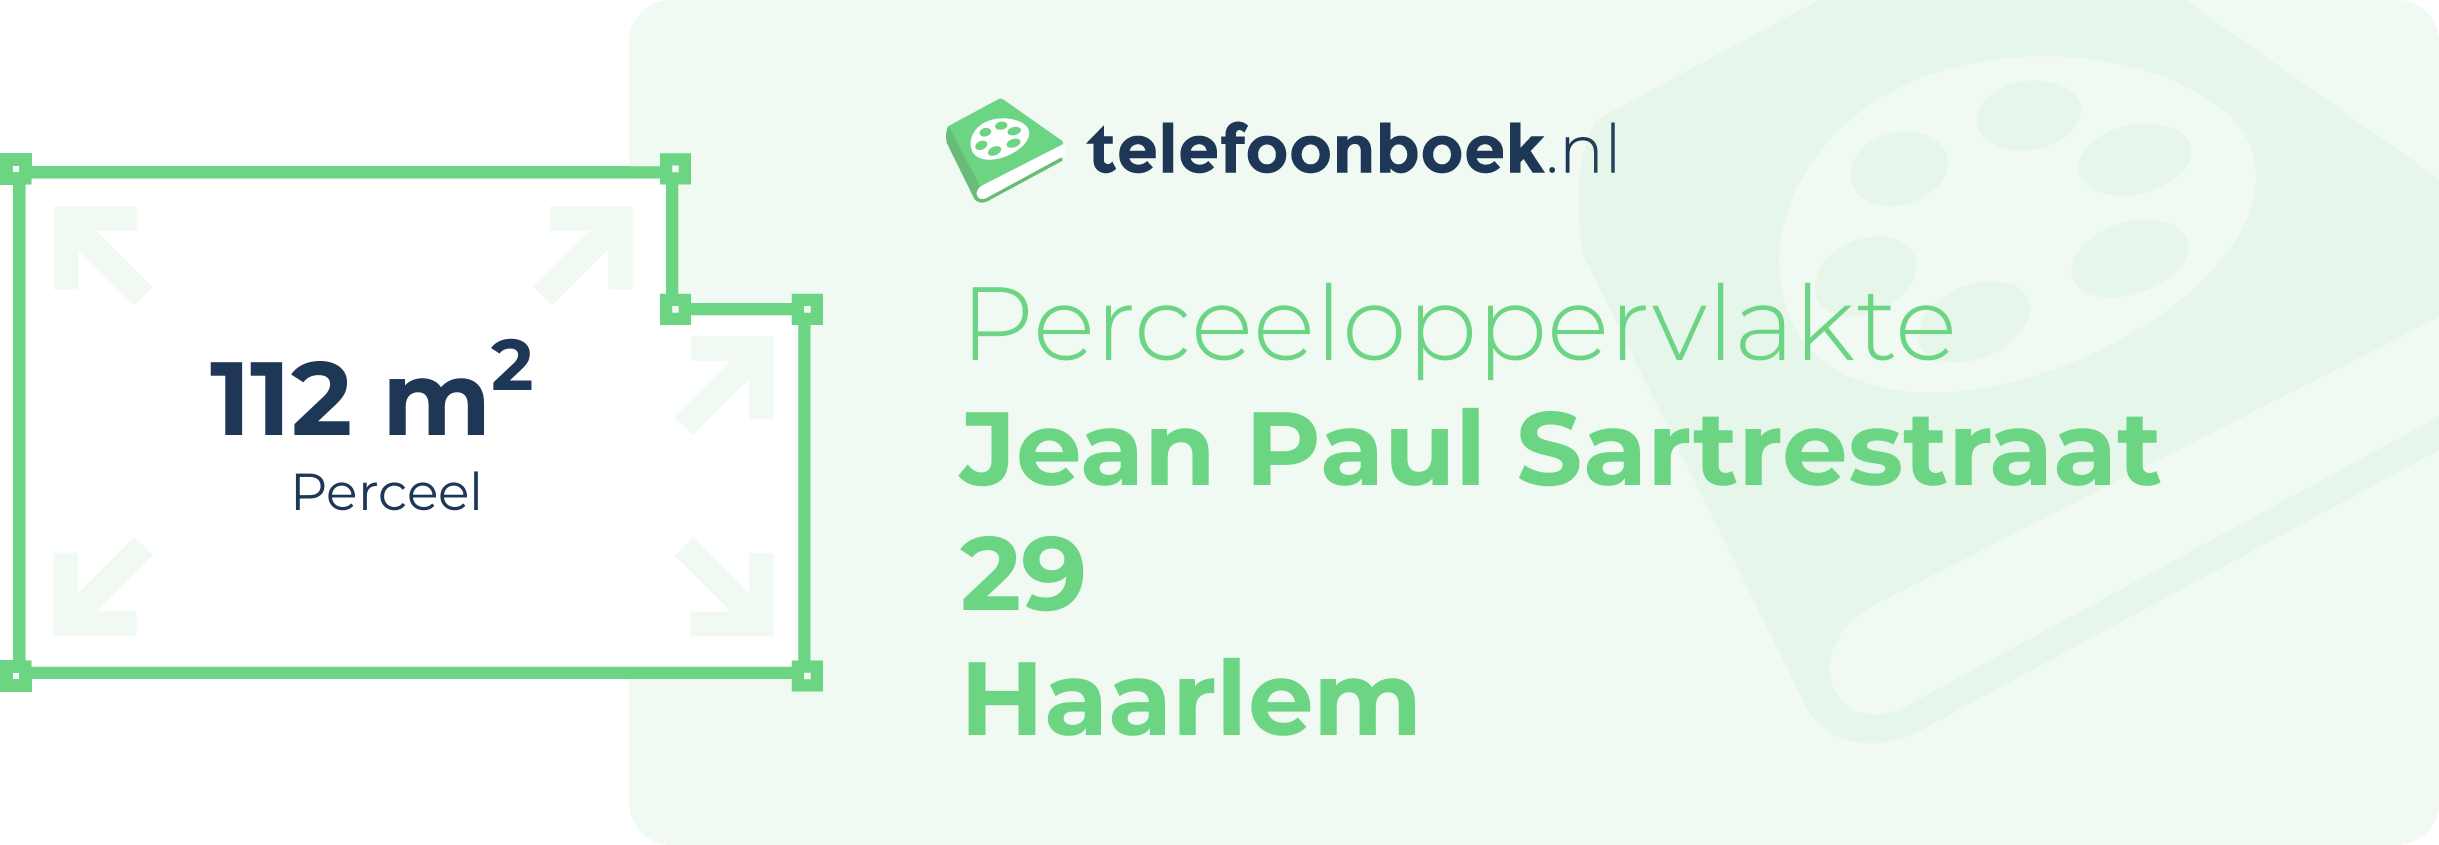 Perceeloppervlakte Jean Paul Sartrestraat 29 Haarlem